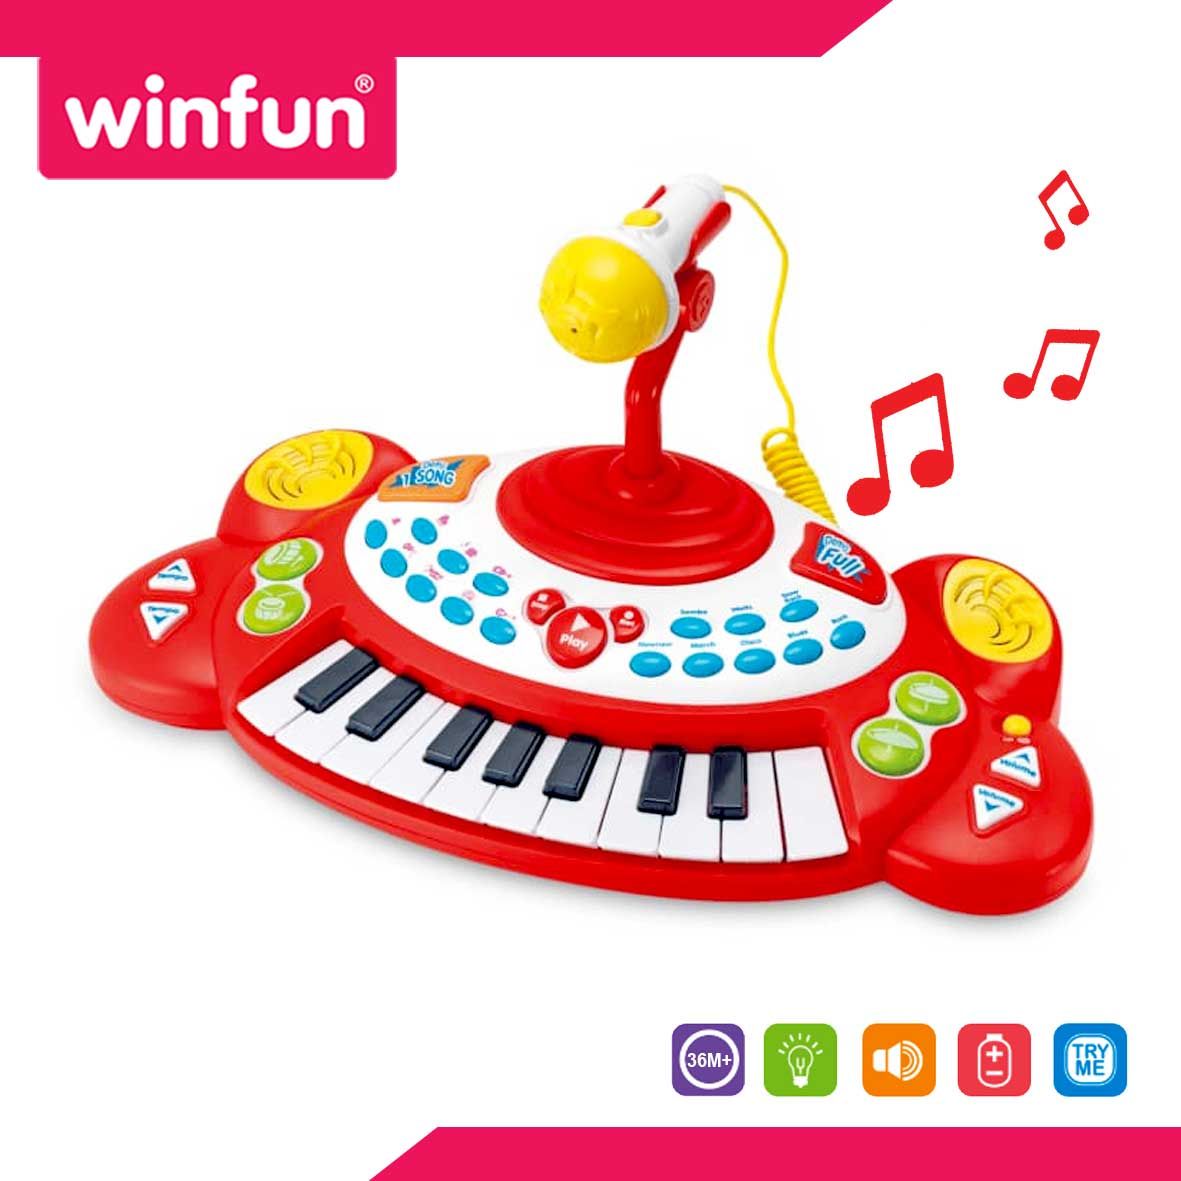 Winfun Superstar Electronic Keyboard - W002055 - 3